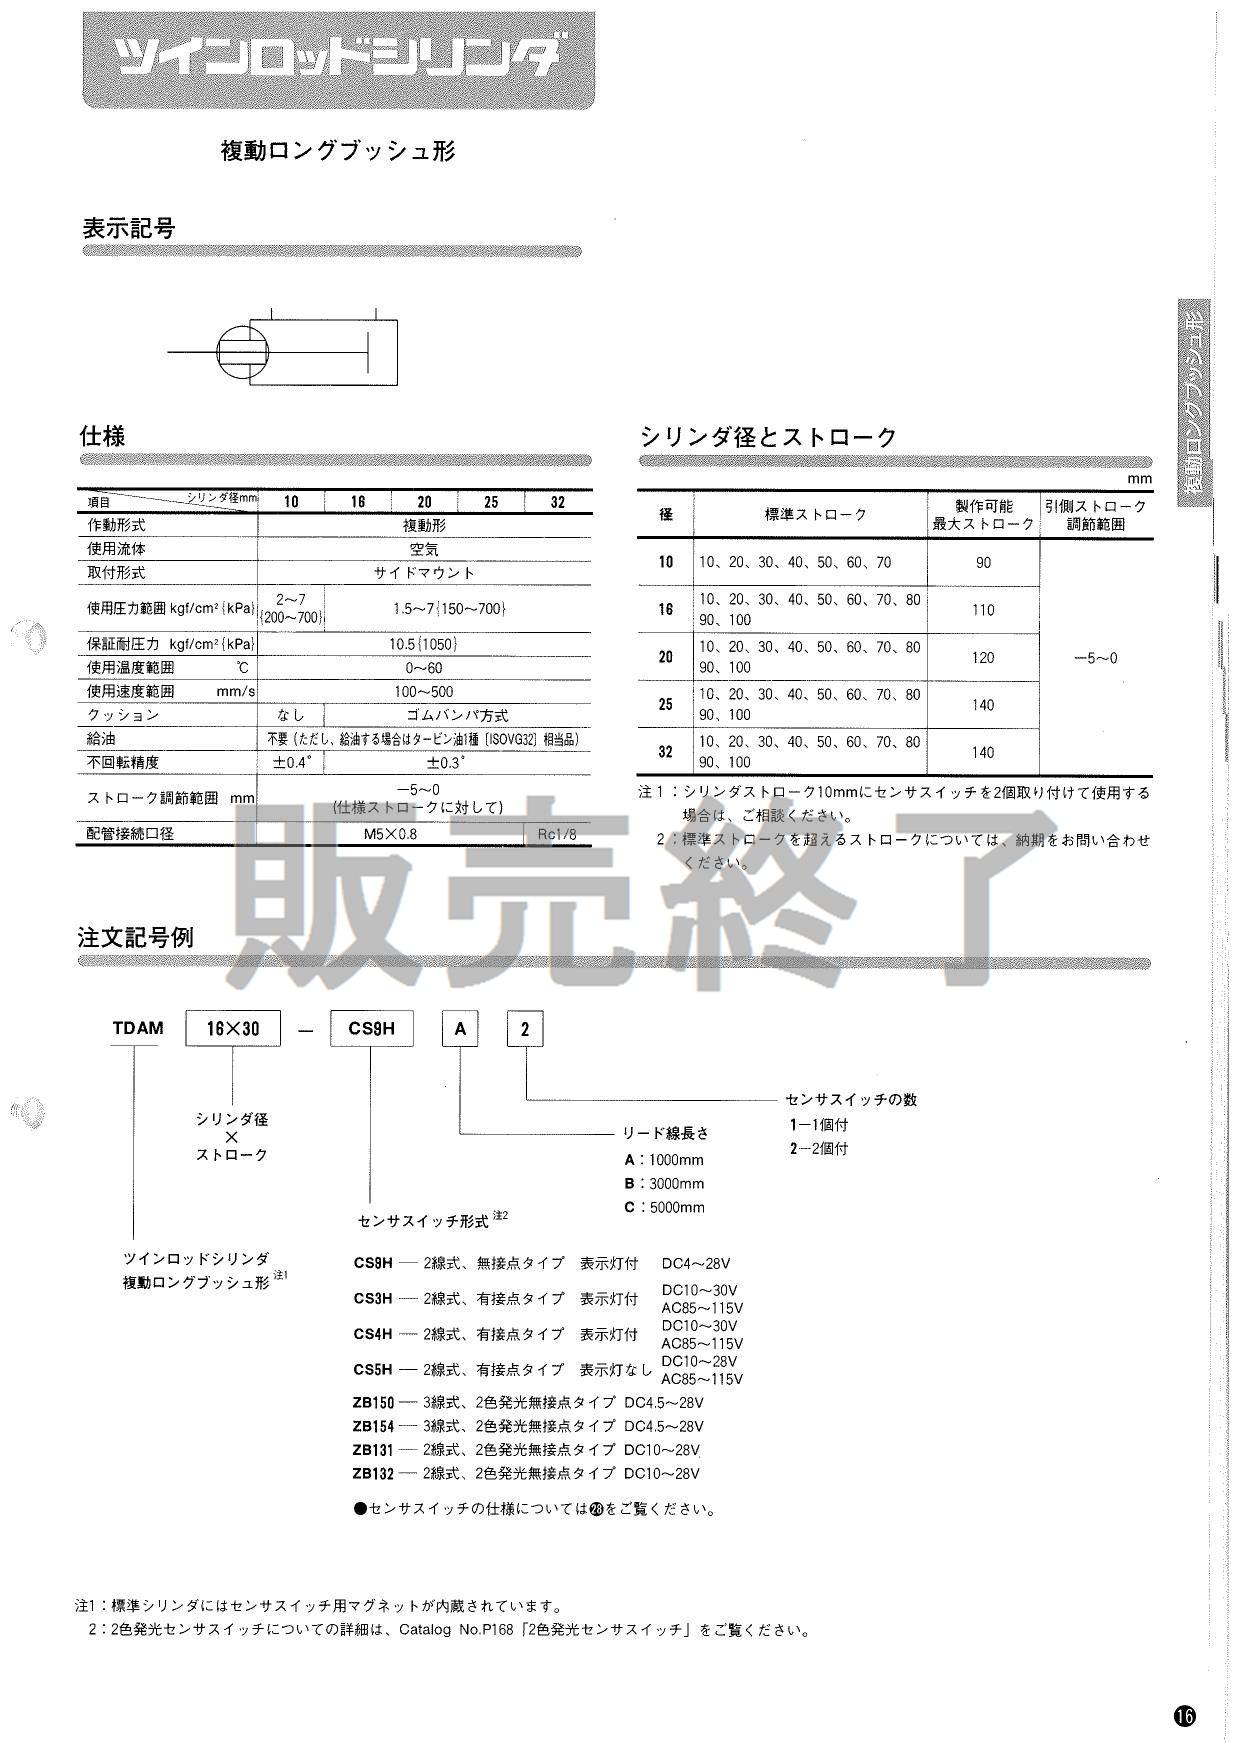 コガネイ ツインポートシリンダ TWDA20X400-HA - starshipsproject.com